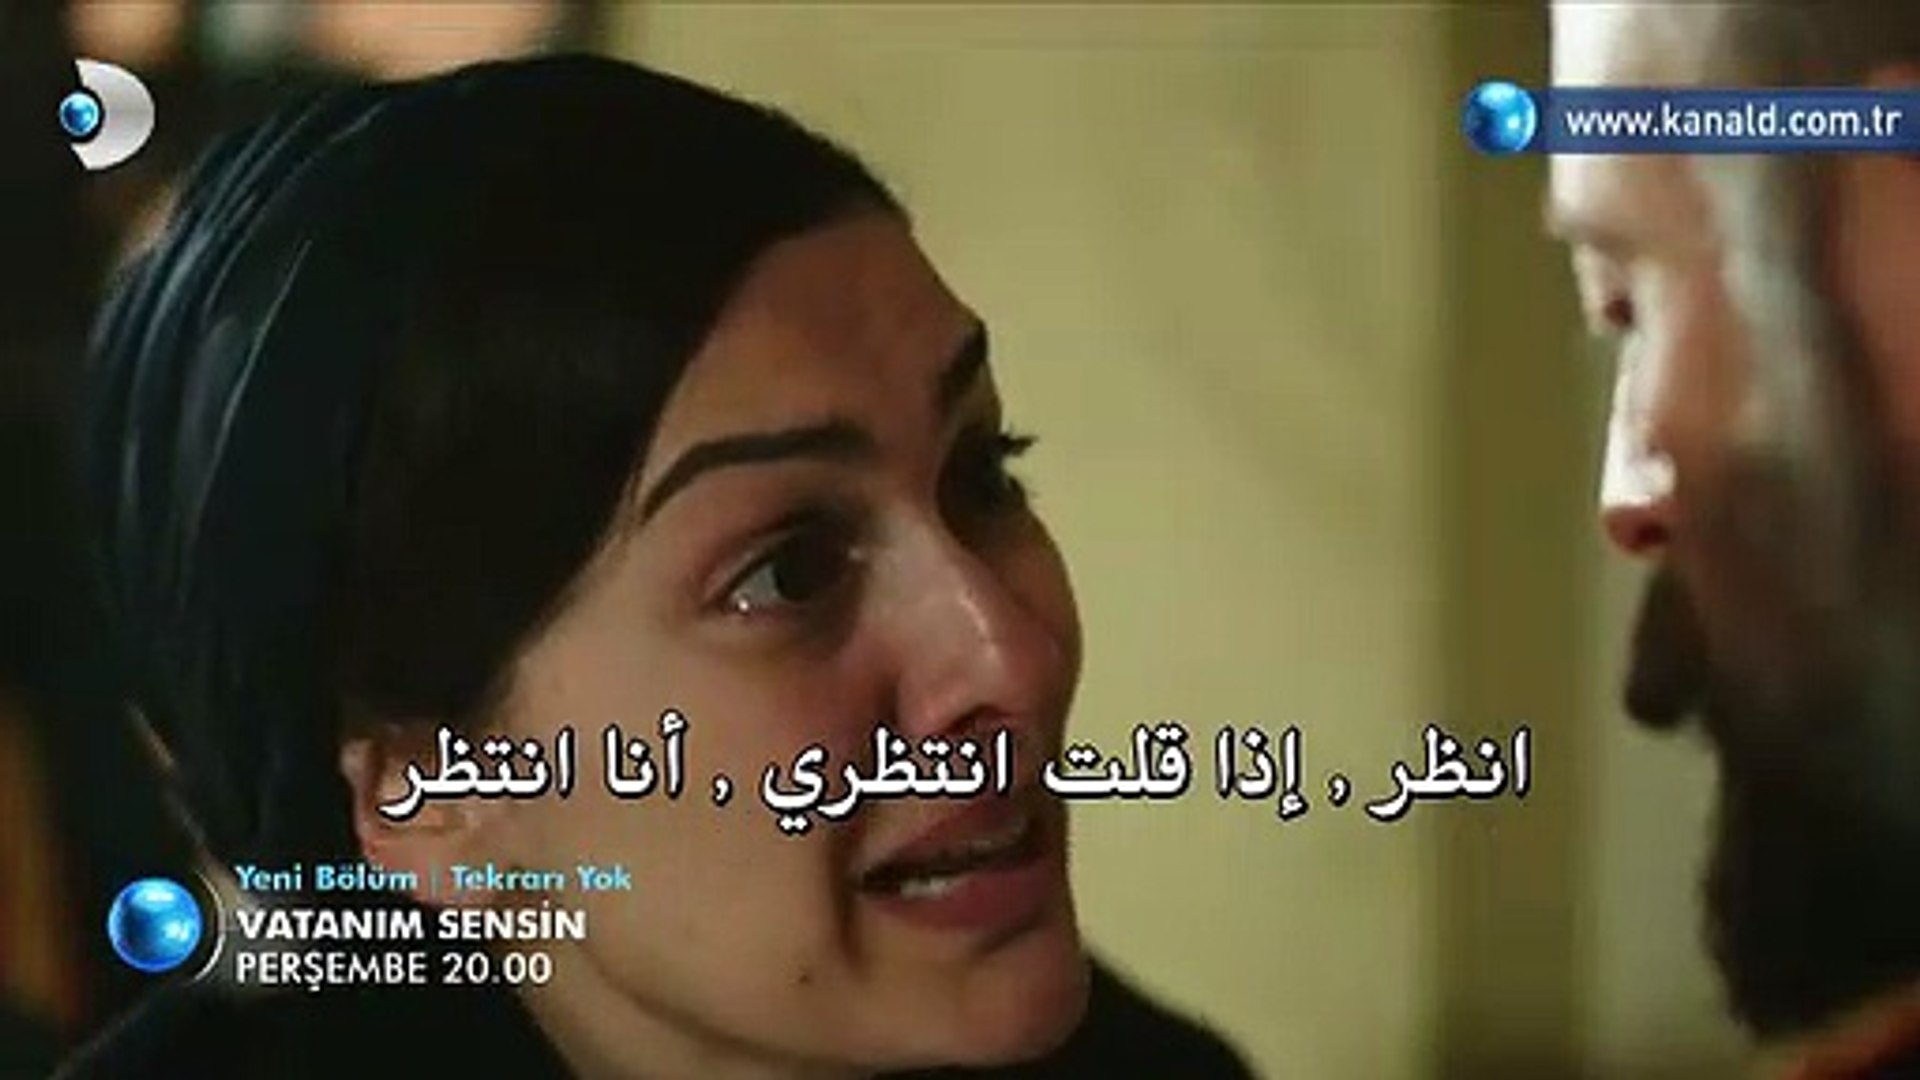 مسلسل أنت وطني الحلقة 22 مترجم للعربية فيديو Dailymotion